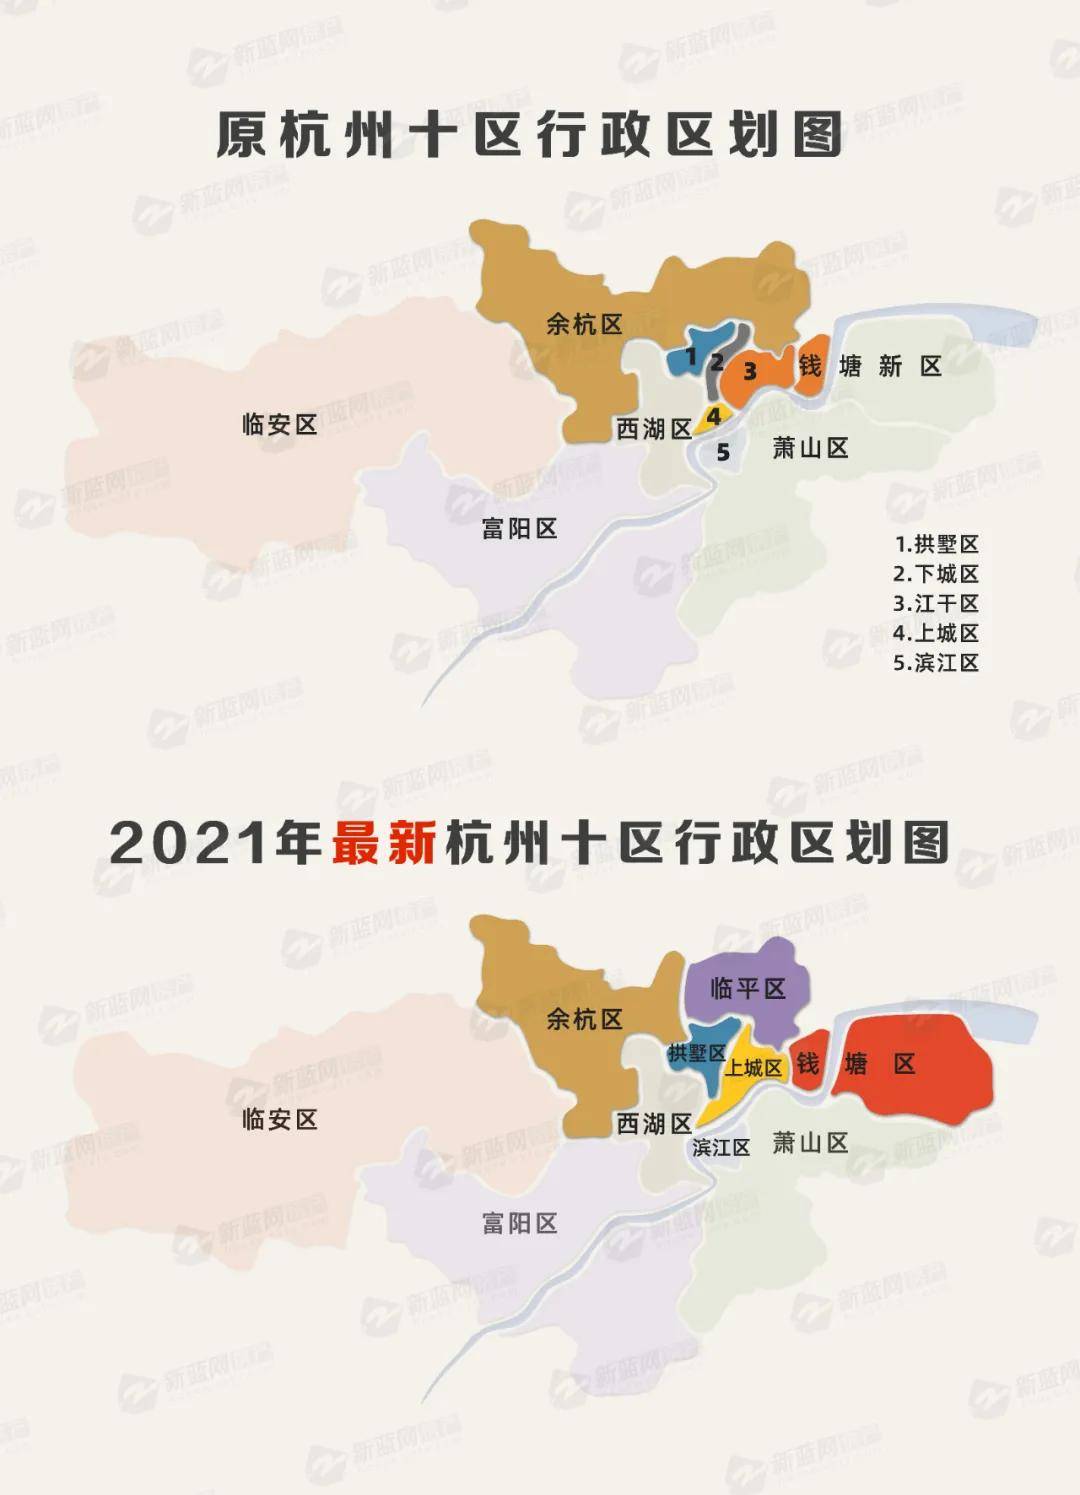 杭州行政区划调整后谁是最大赢家?